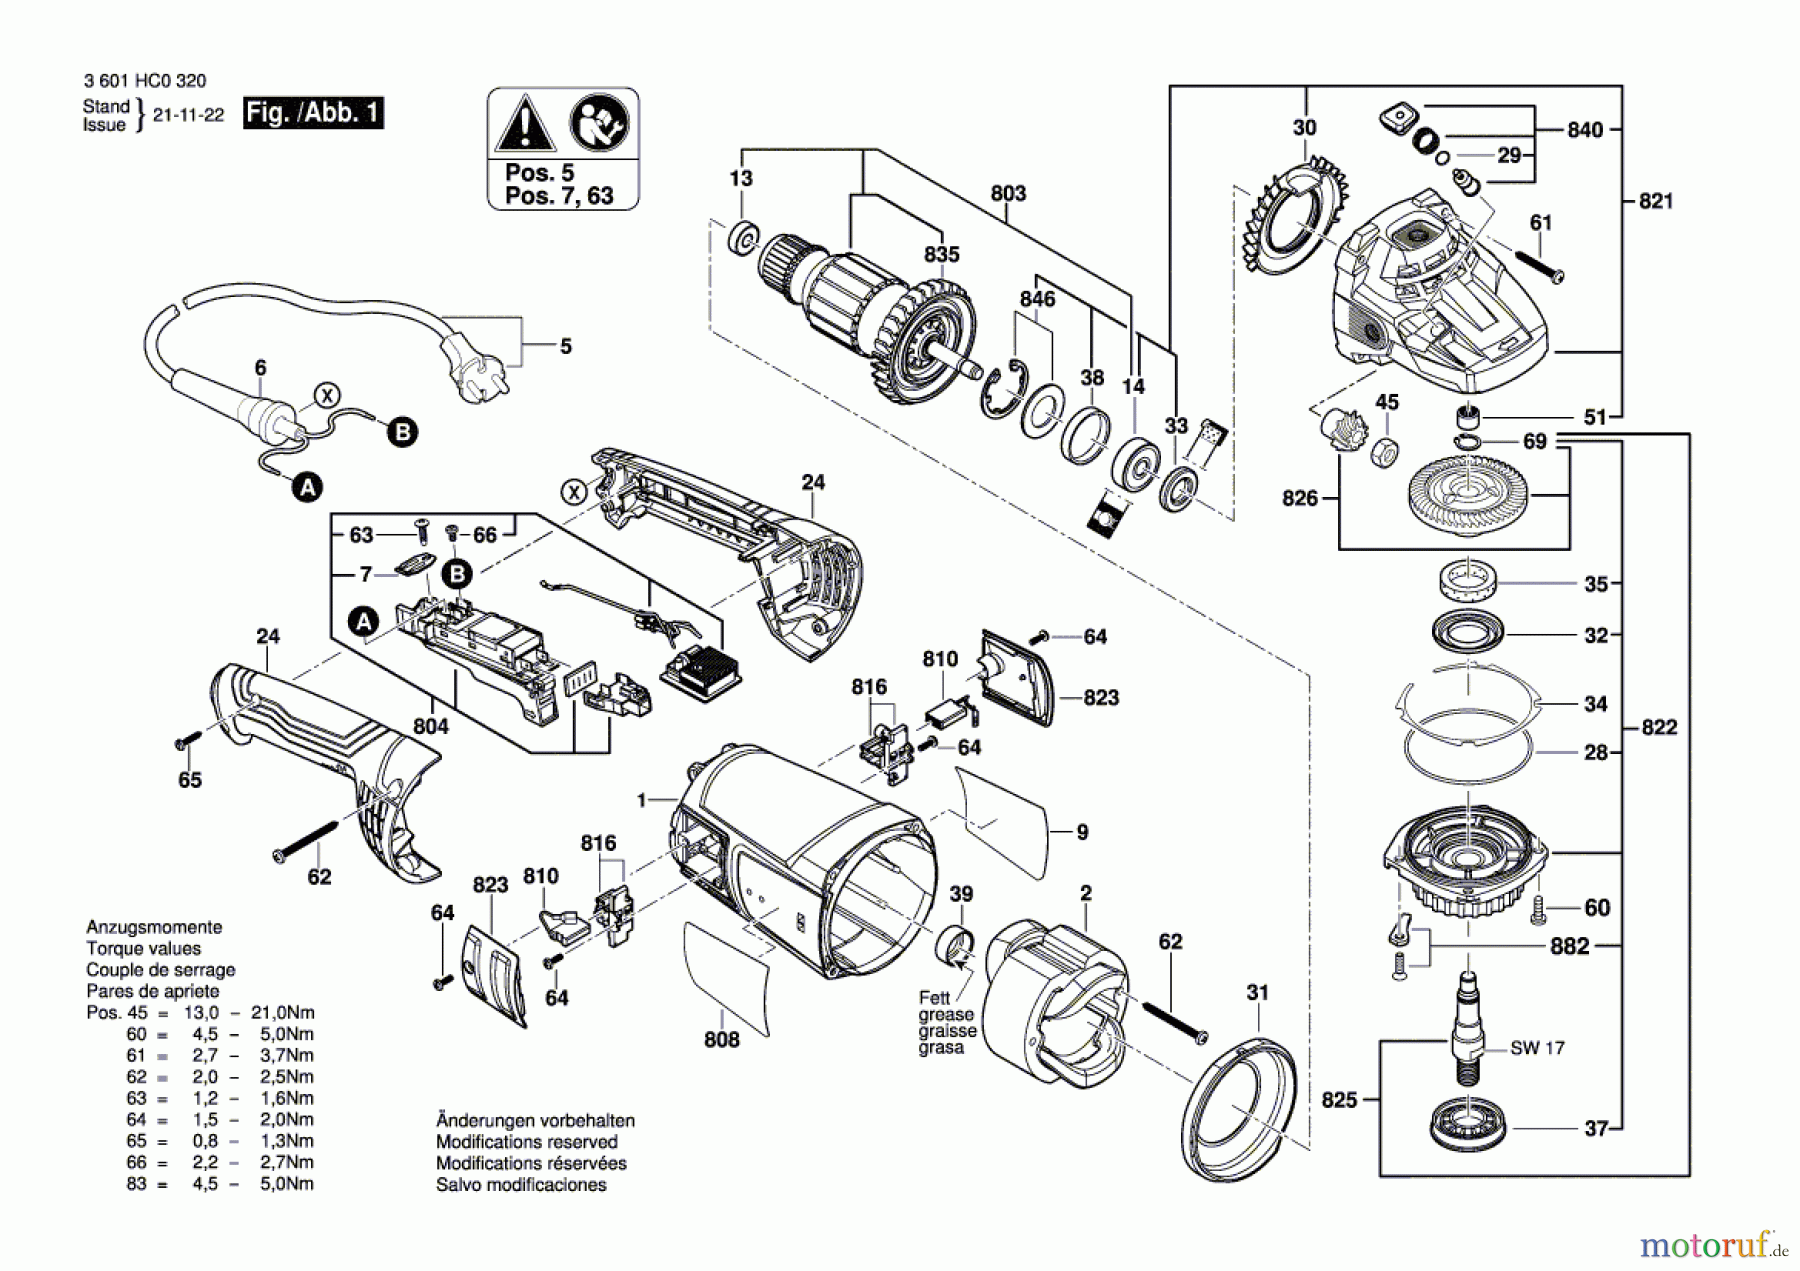  Bosch Werkzeug Winkelschleifer GWS 2200 Seite 1